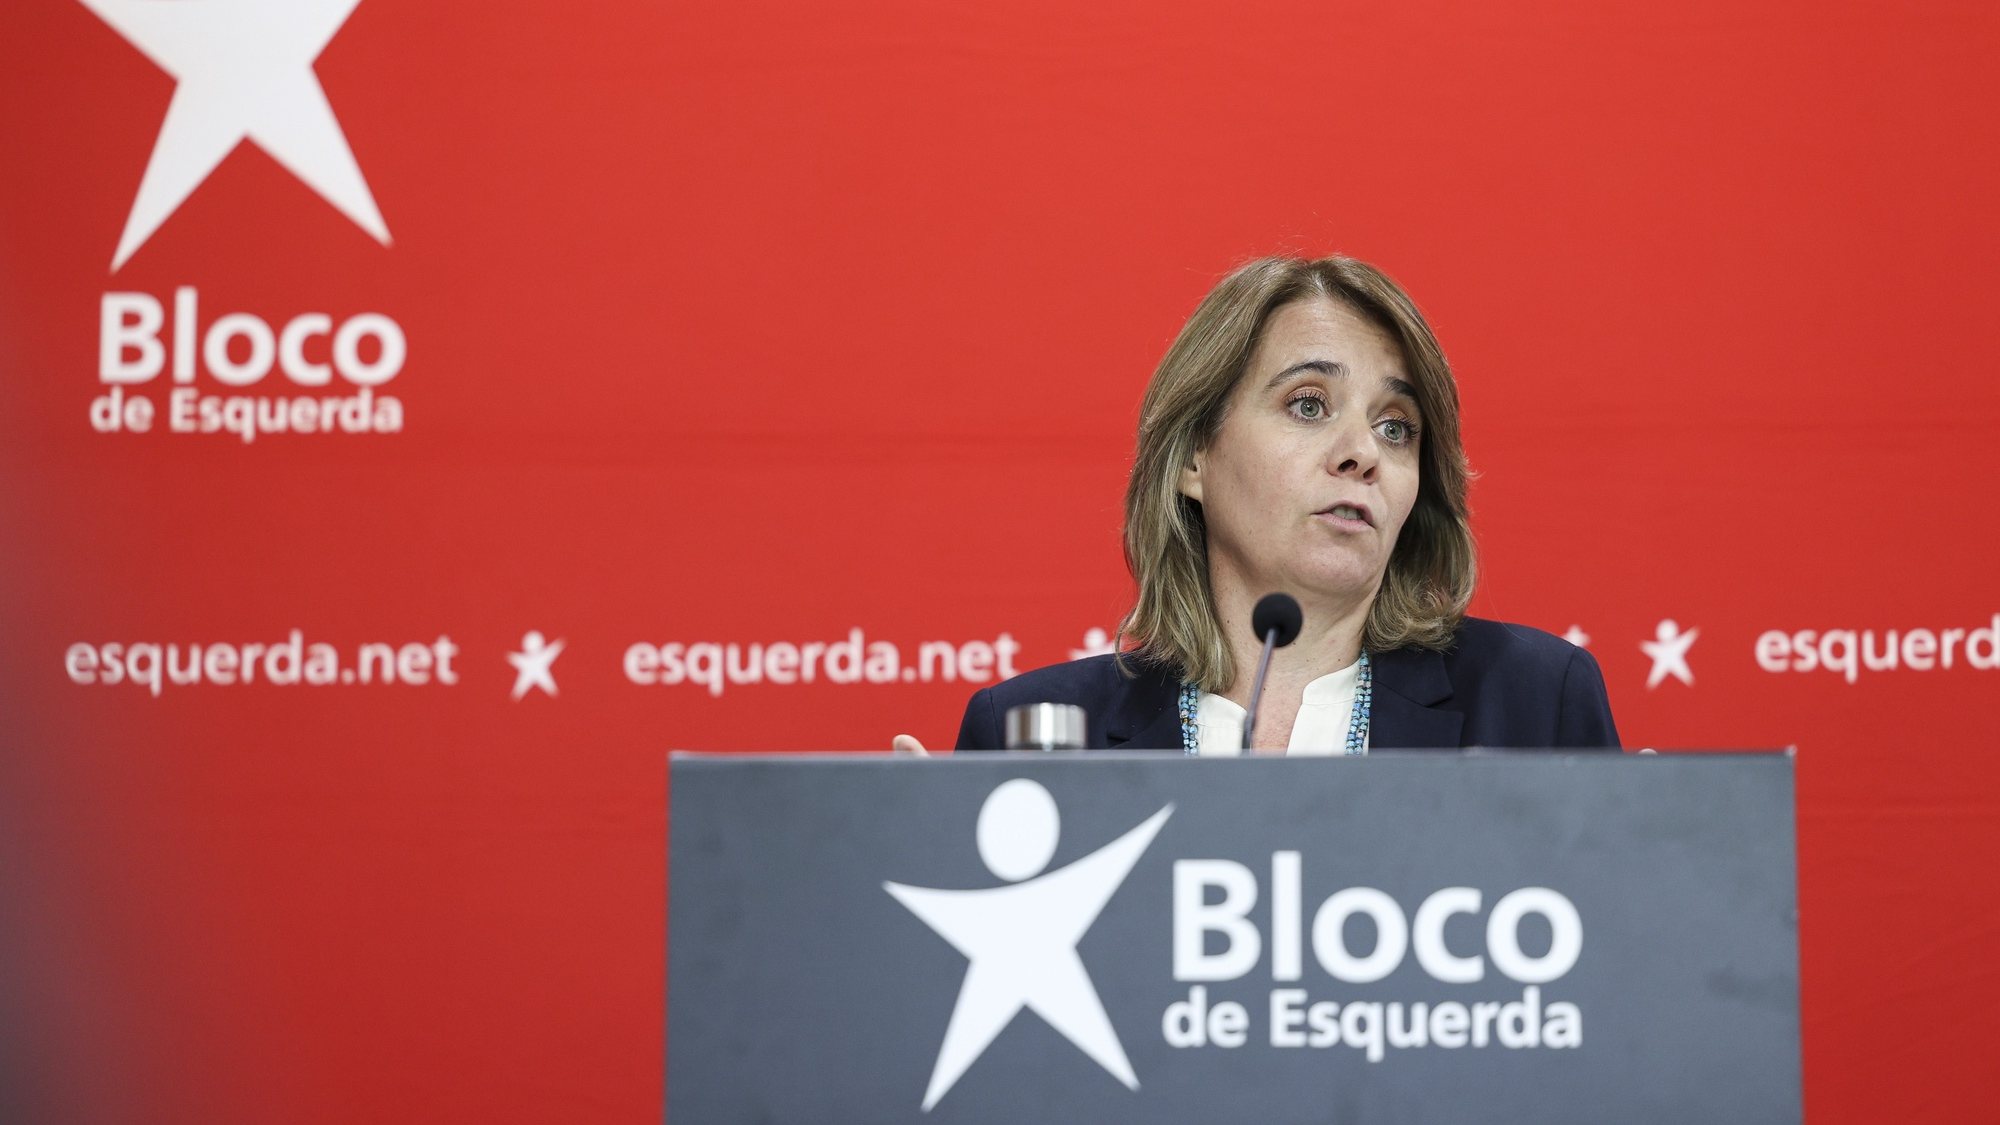 A coordenadora do Bloco de Esquerda, Catarina Martins  apresenta as conclusões da reunião da mesa nacional do Bloco de esquerda esta tarde em Lisboa. 19 de novembro de 2022.  MIGUEL A. LOPES / LUSA